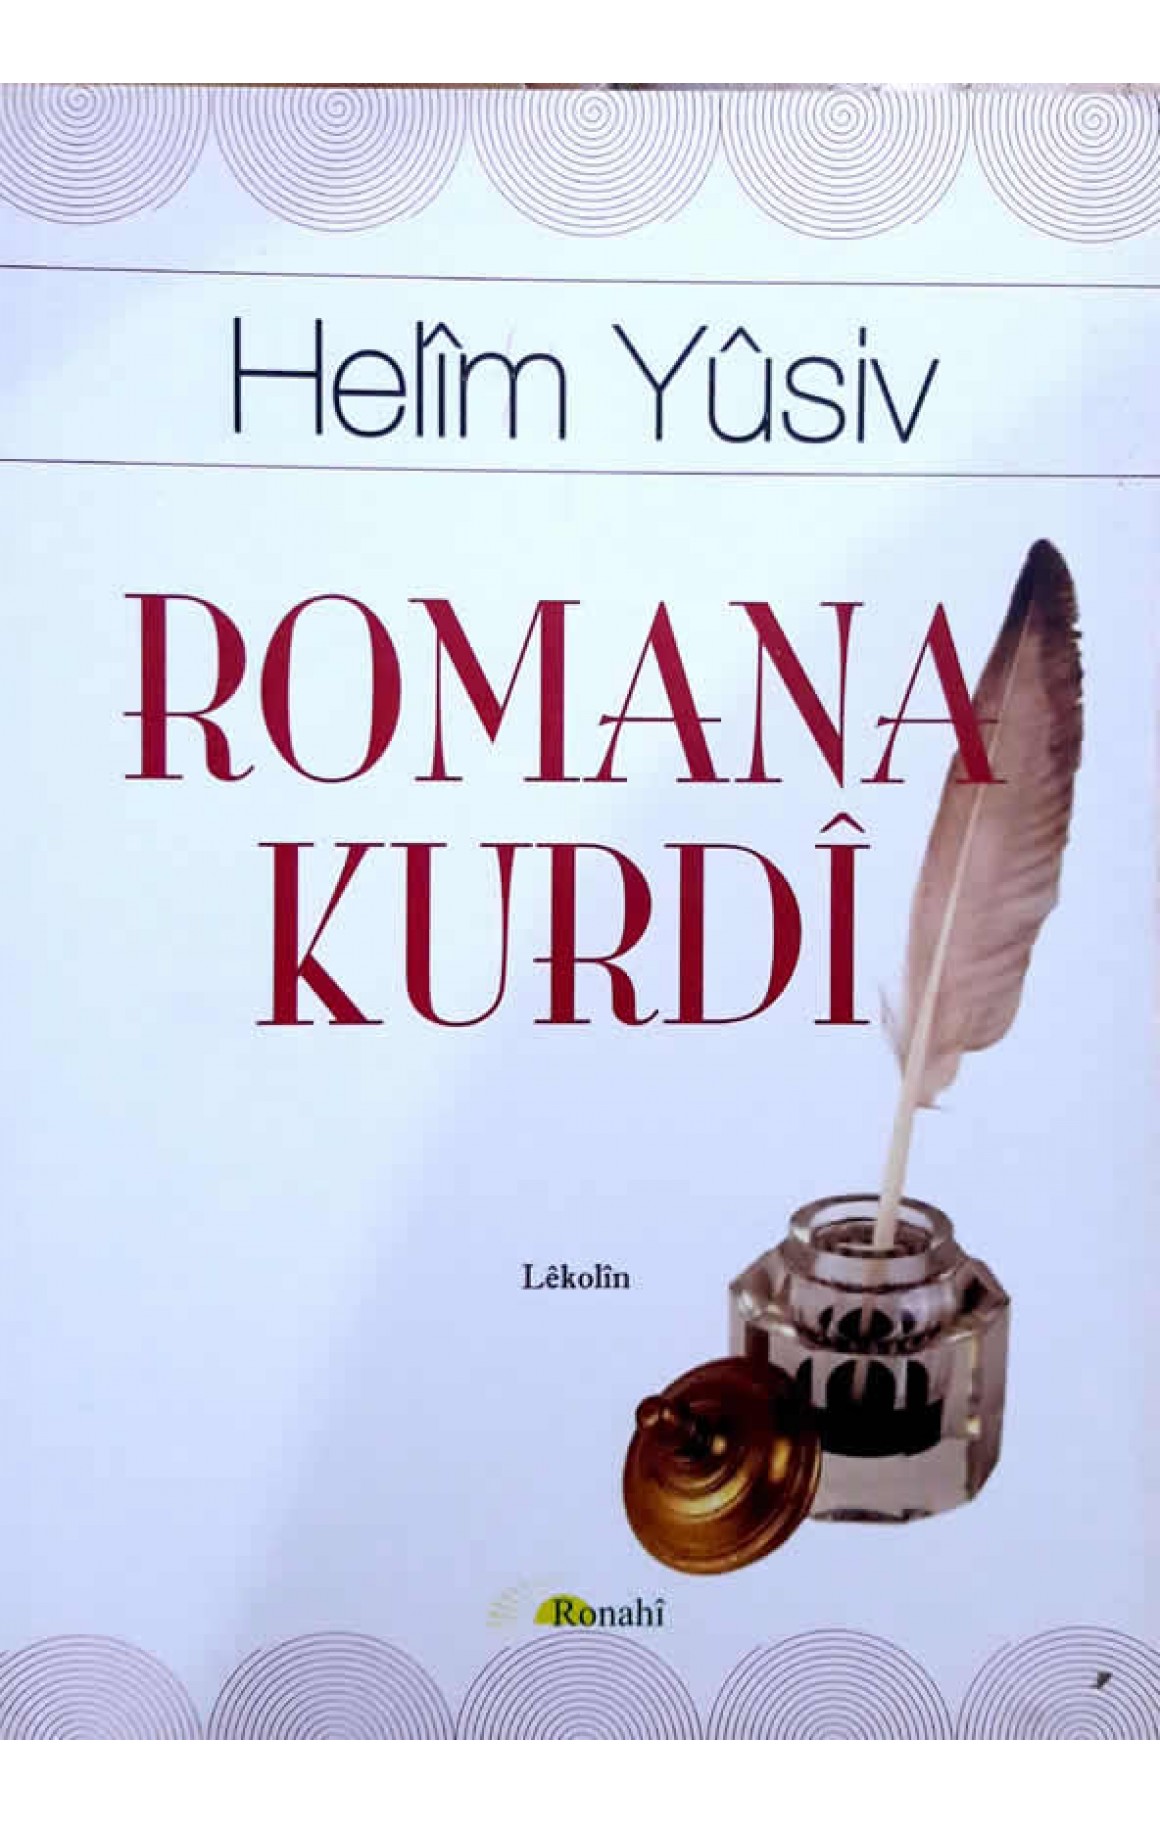 Romana kurdî